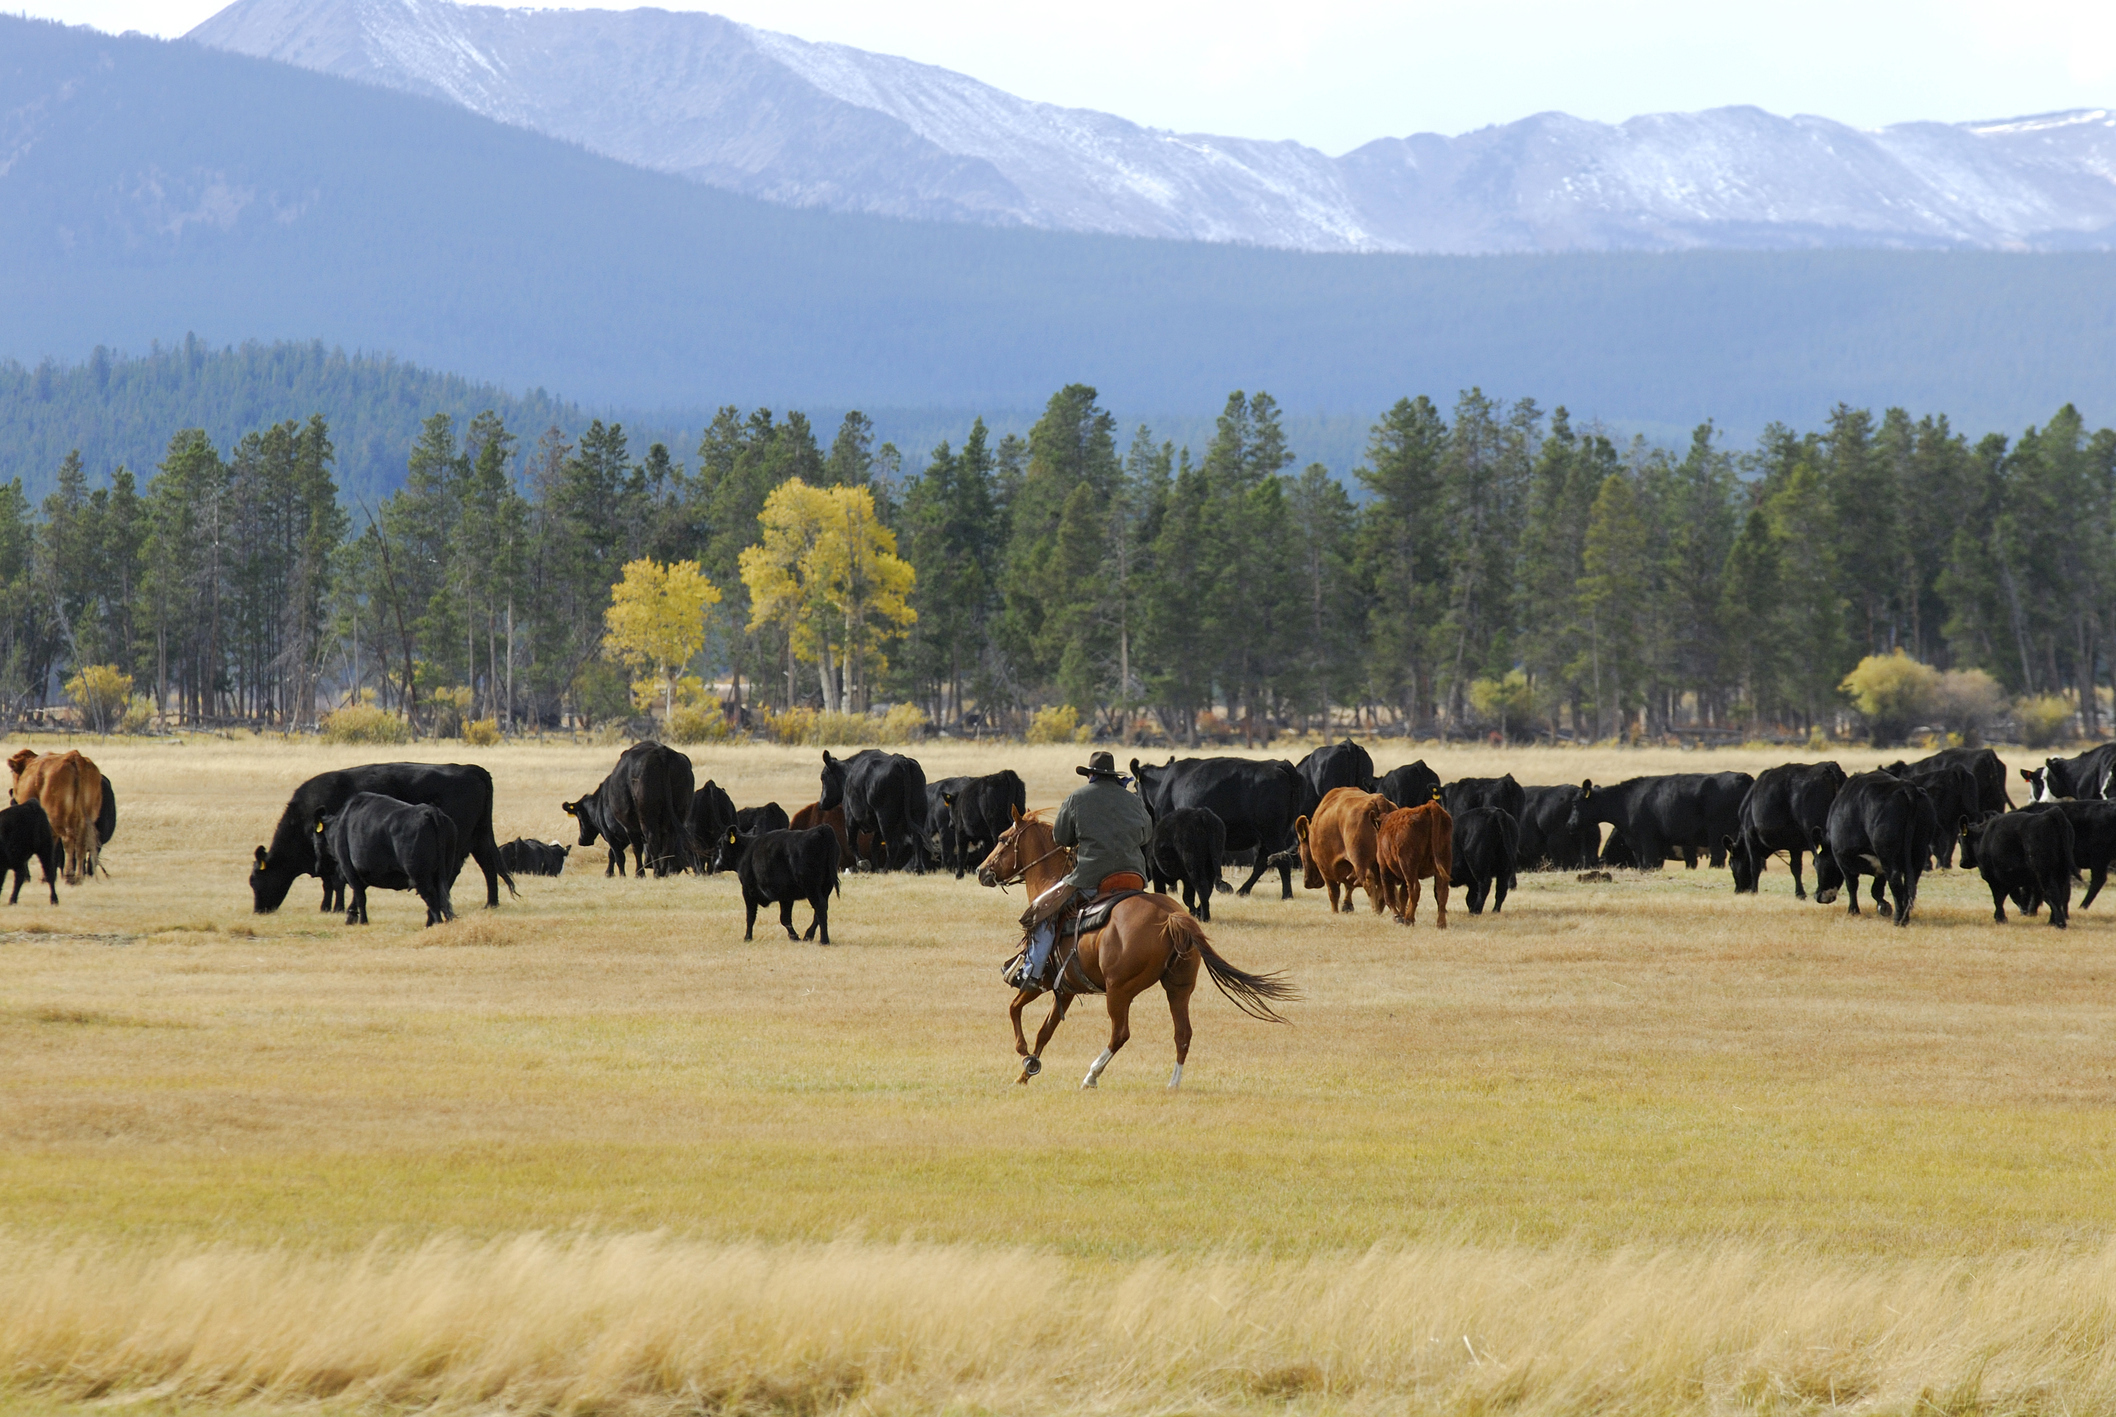 A horseman riding through a herd of cattle